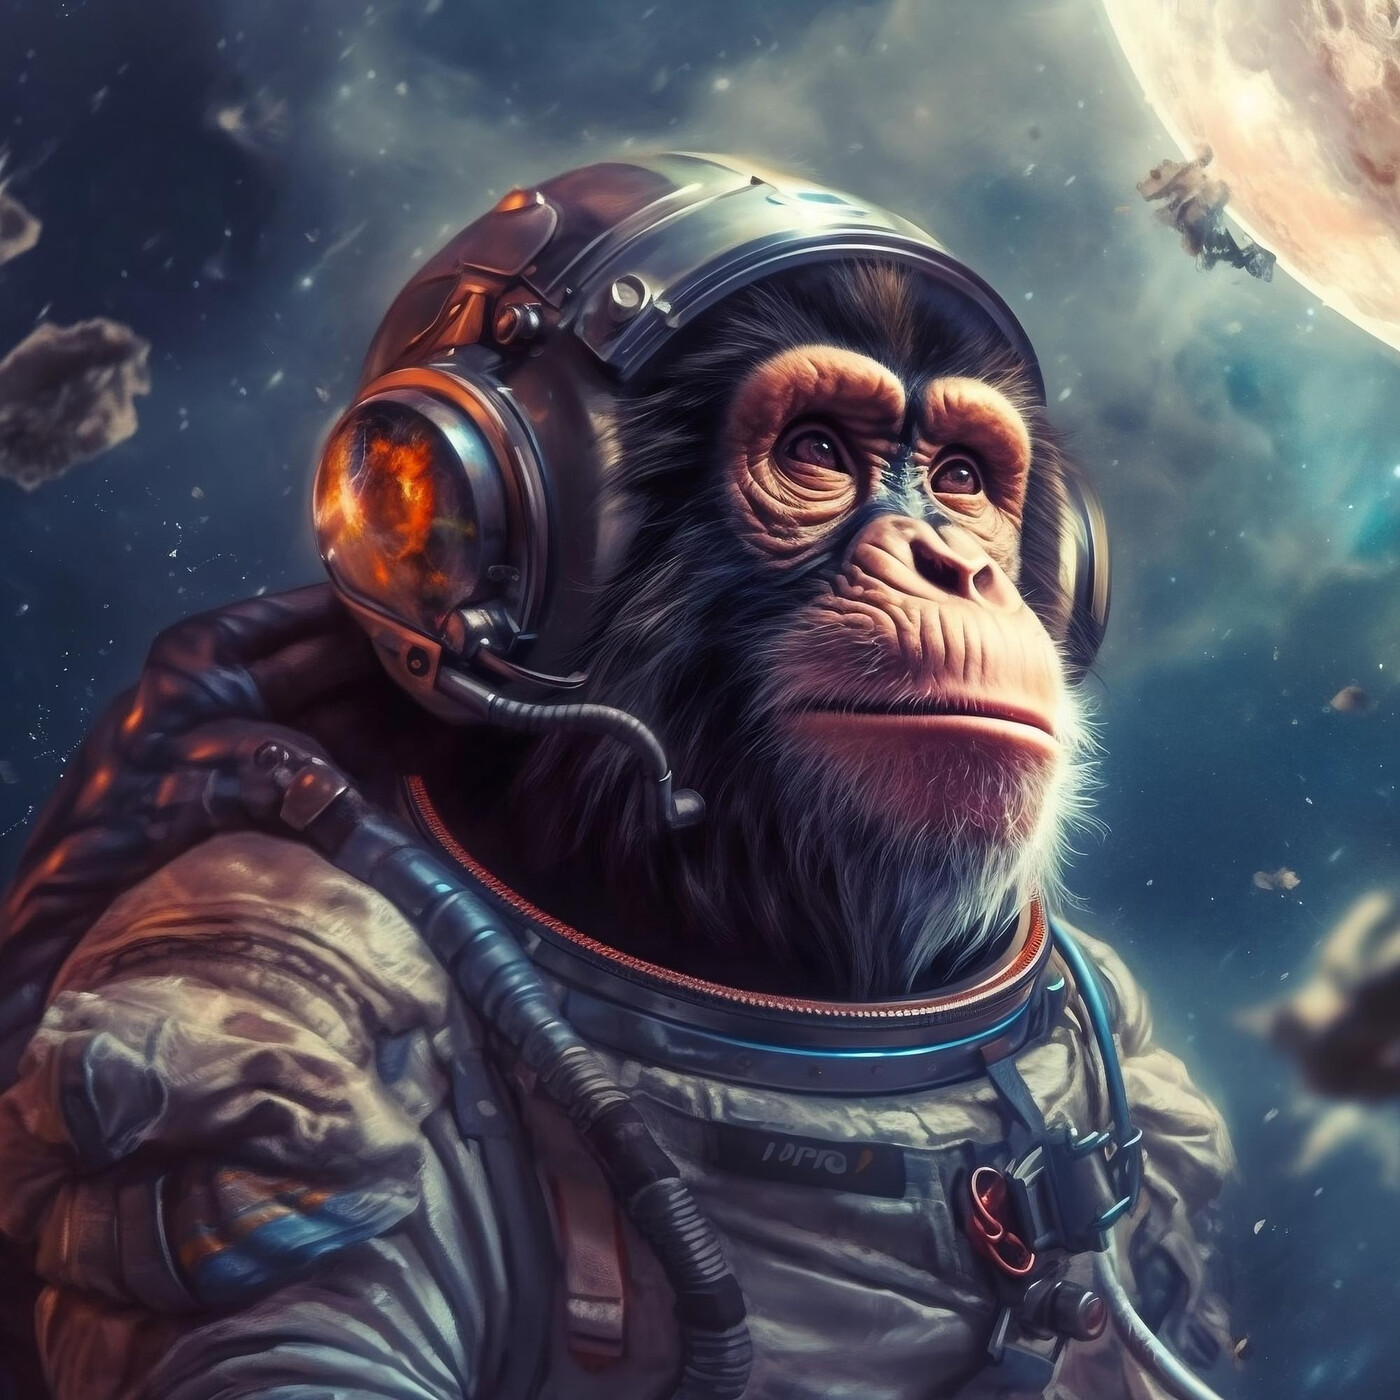 Das erste Tier erreichte nie den Weltraum: eine Hommage an den Affen Albert.